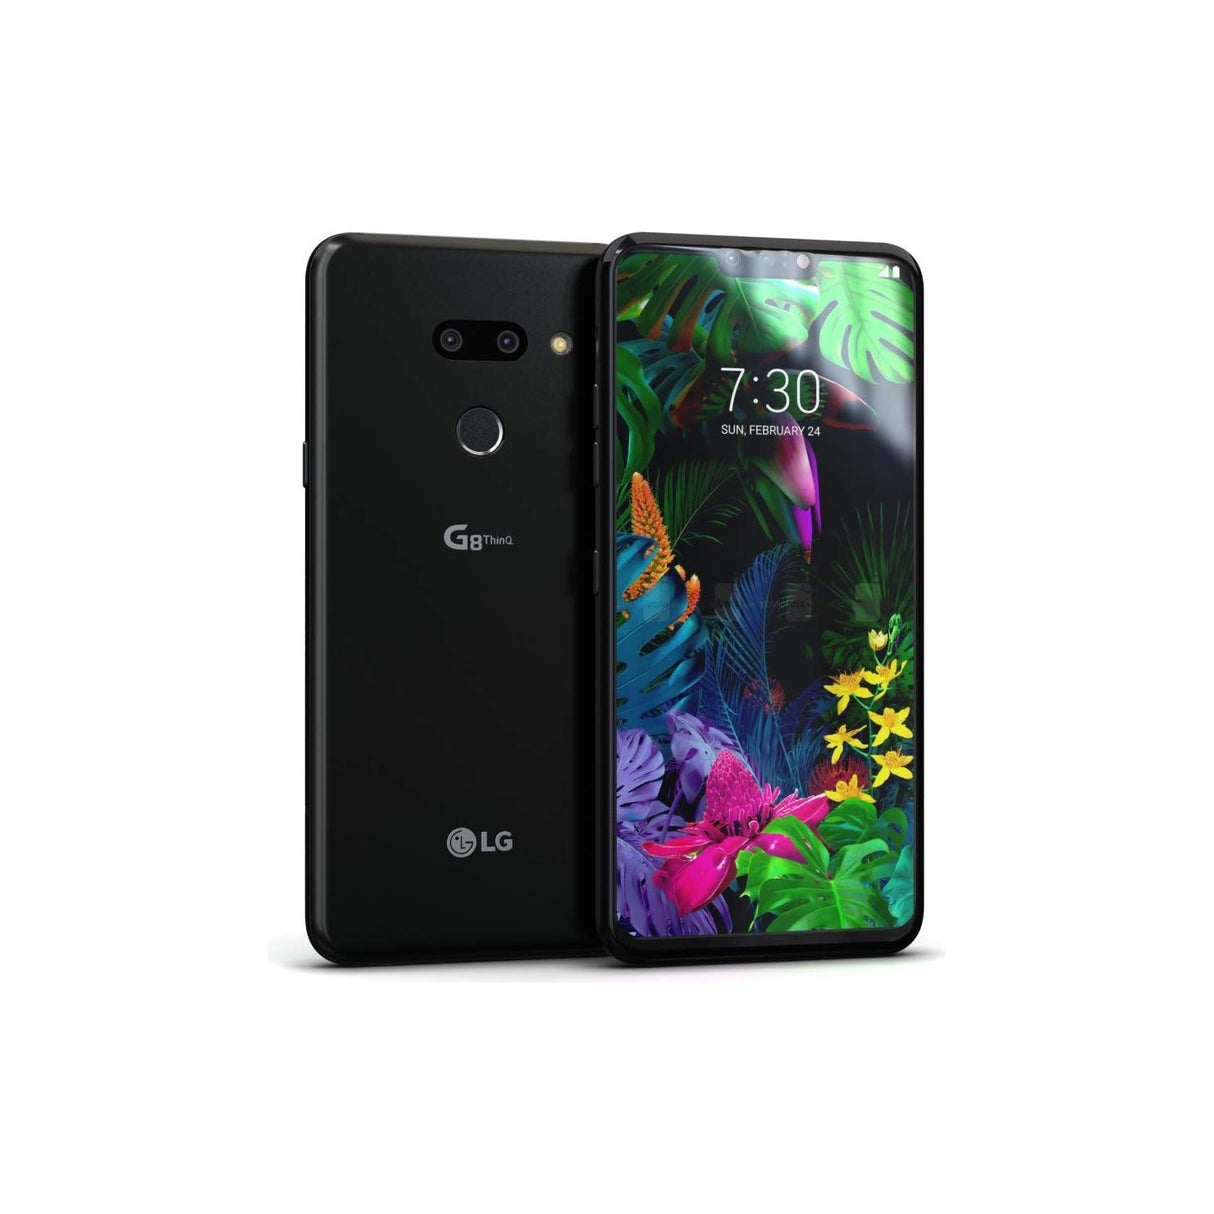 LG G8 ThinQ - 128 GB - Platinum Gray - Verizon - CDMA/GSM